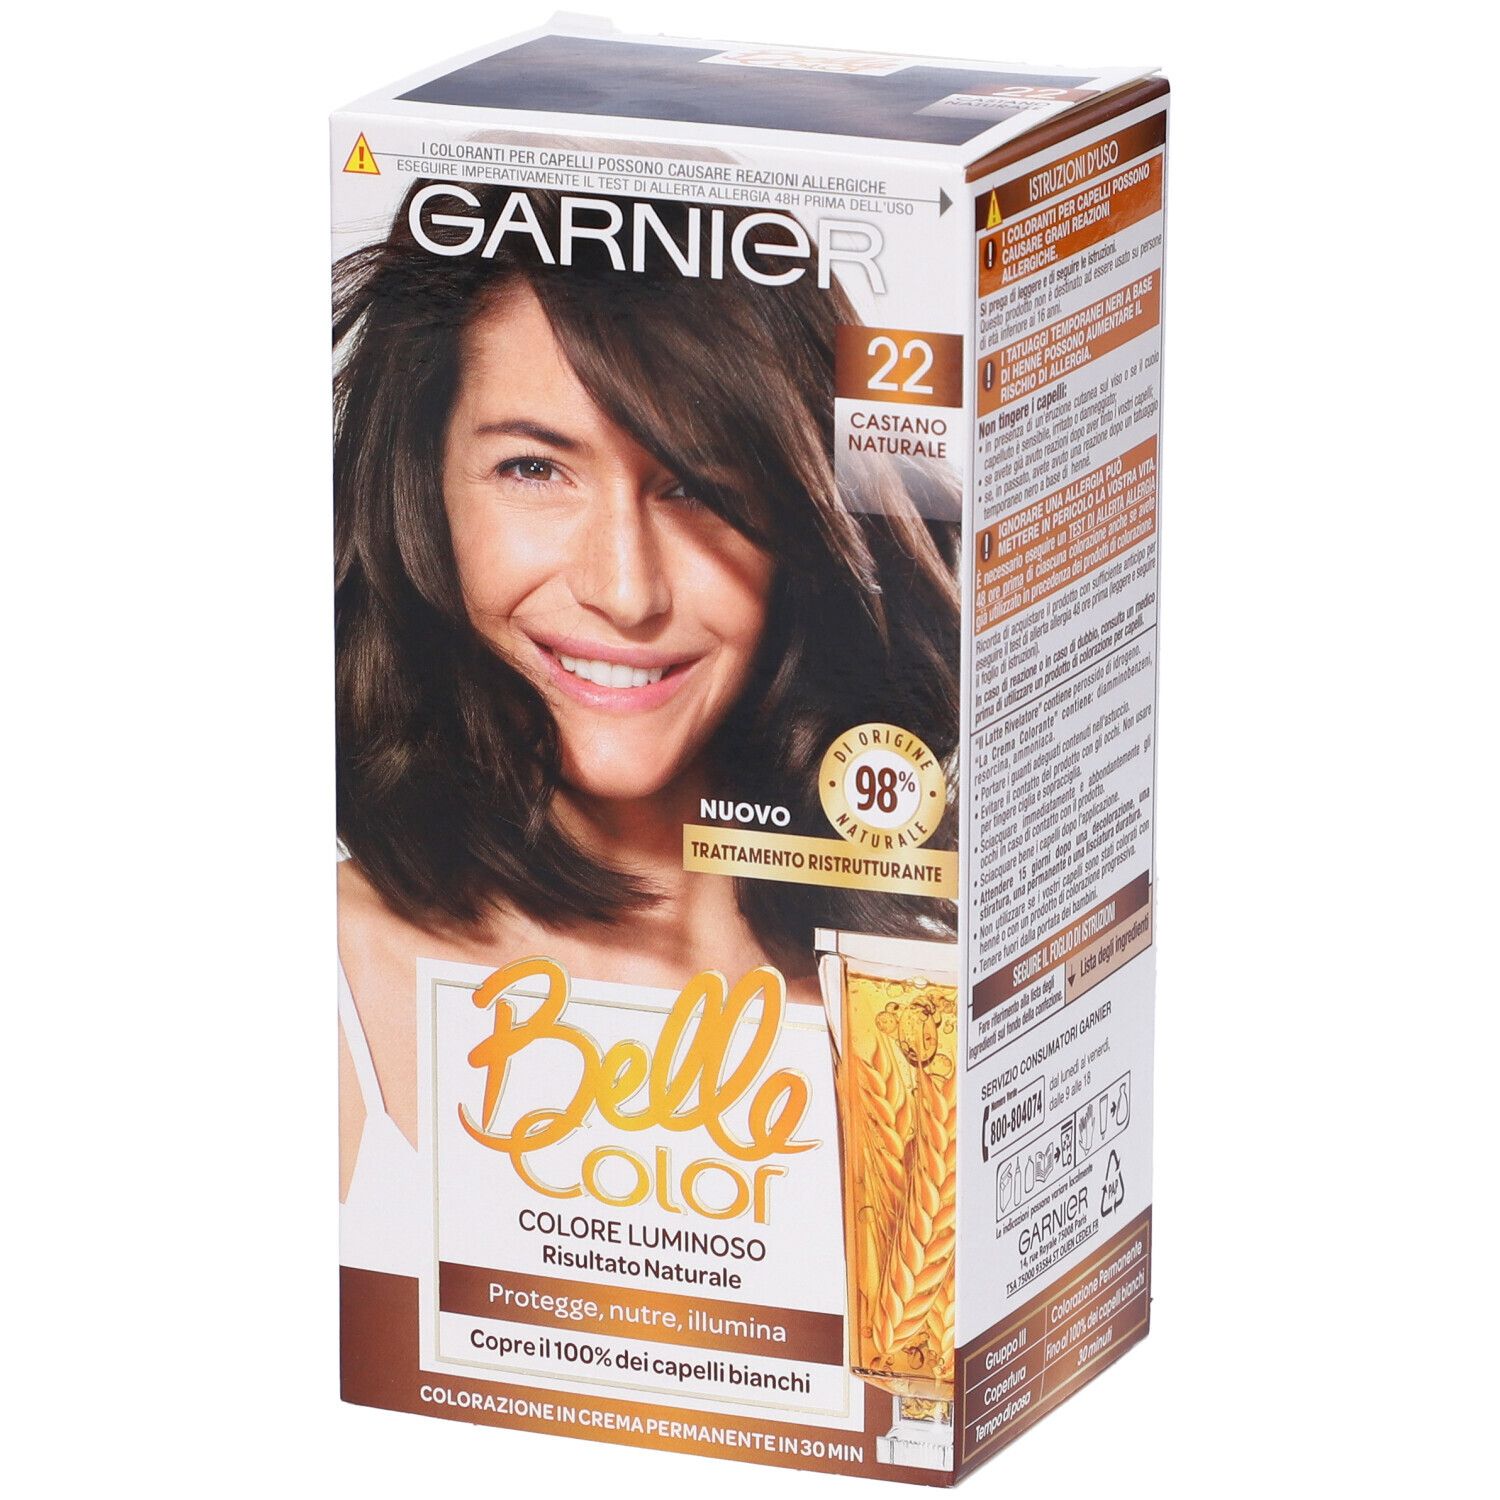 Image of Garnier Tinta Capelli Belle Color, Colore Luminoso e Riflessi Naturali, Copre il 100% dei capelli bianchi, Castano Naturale